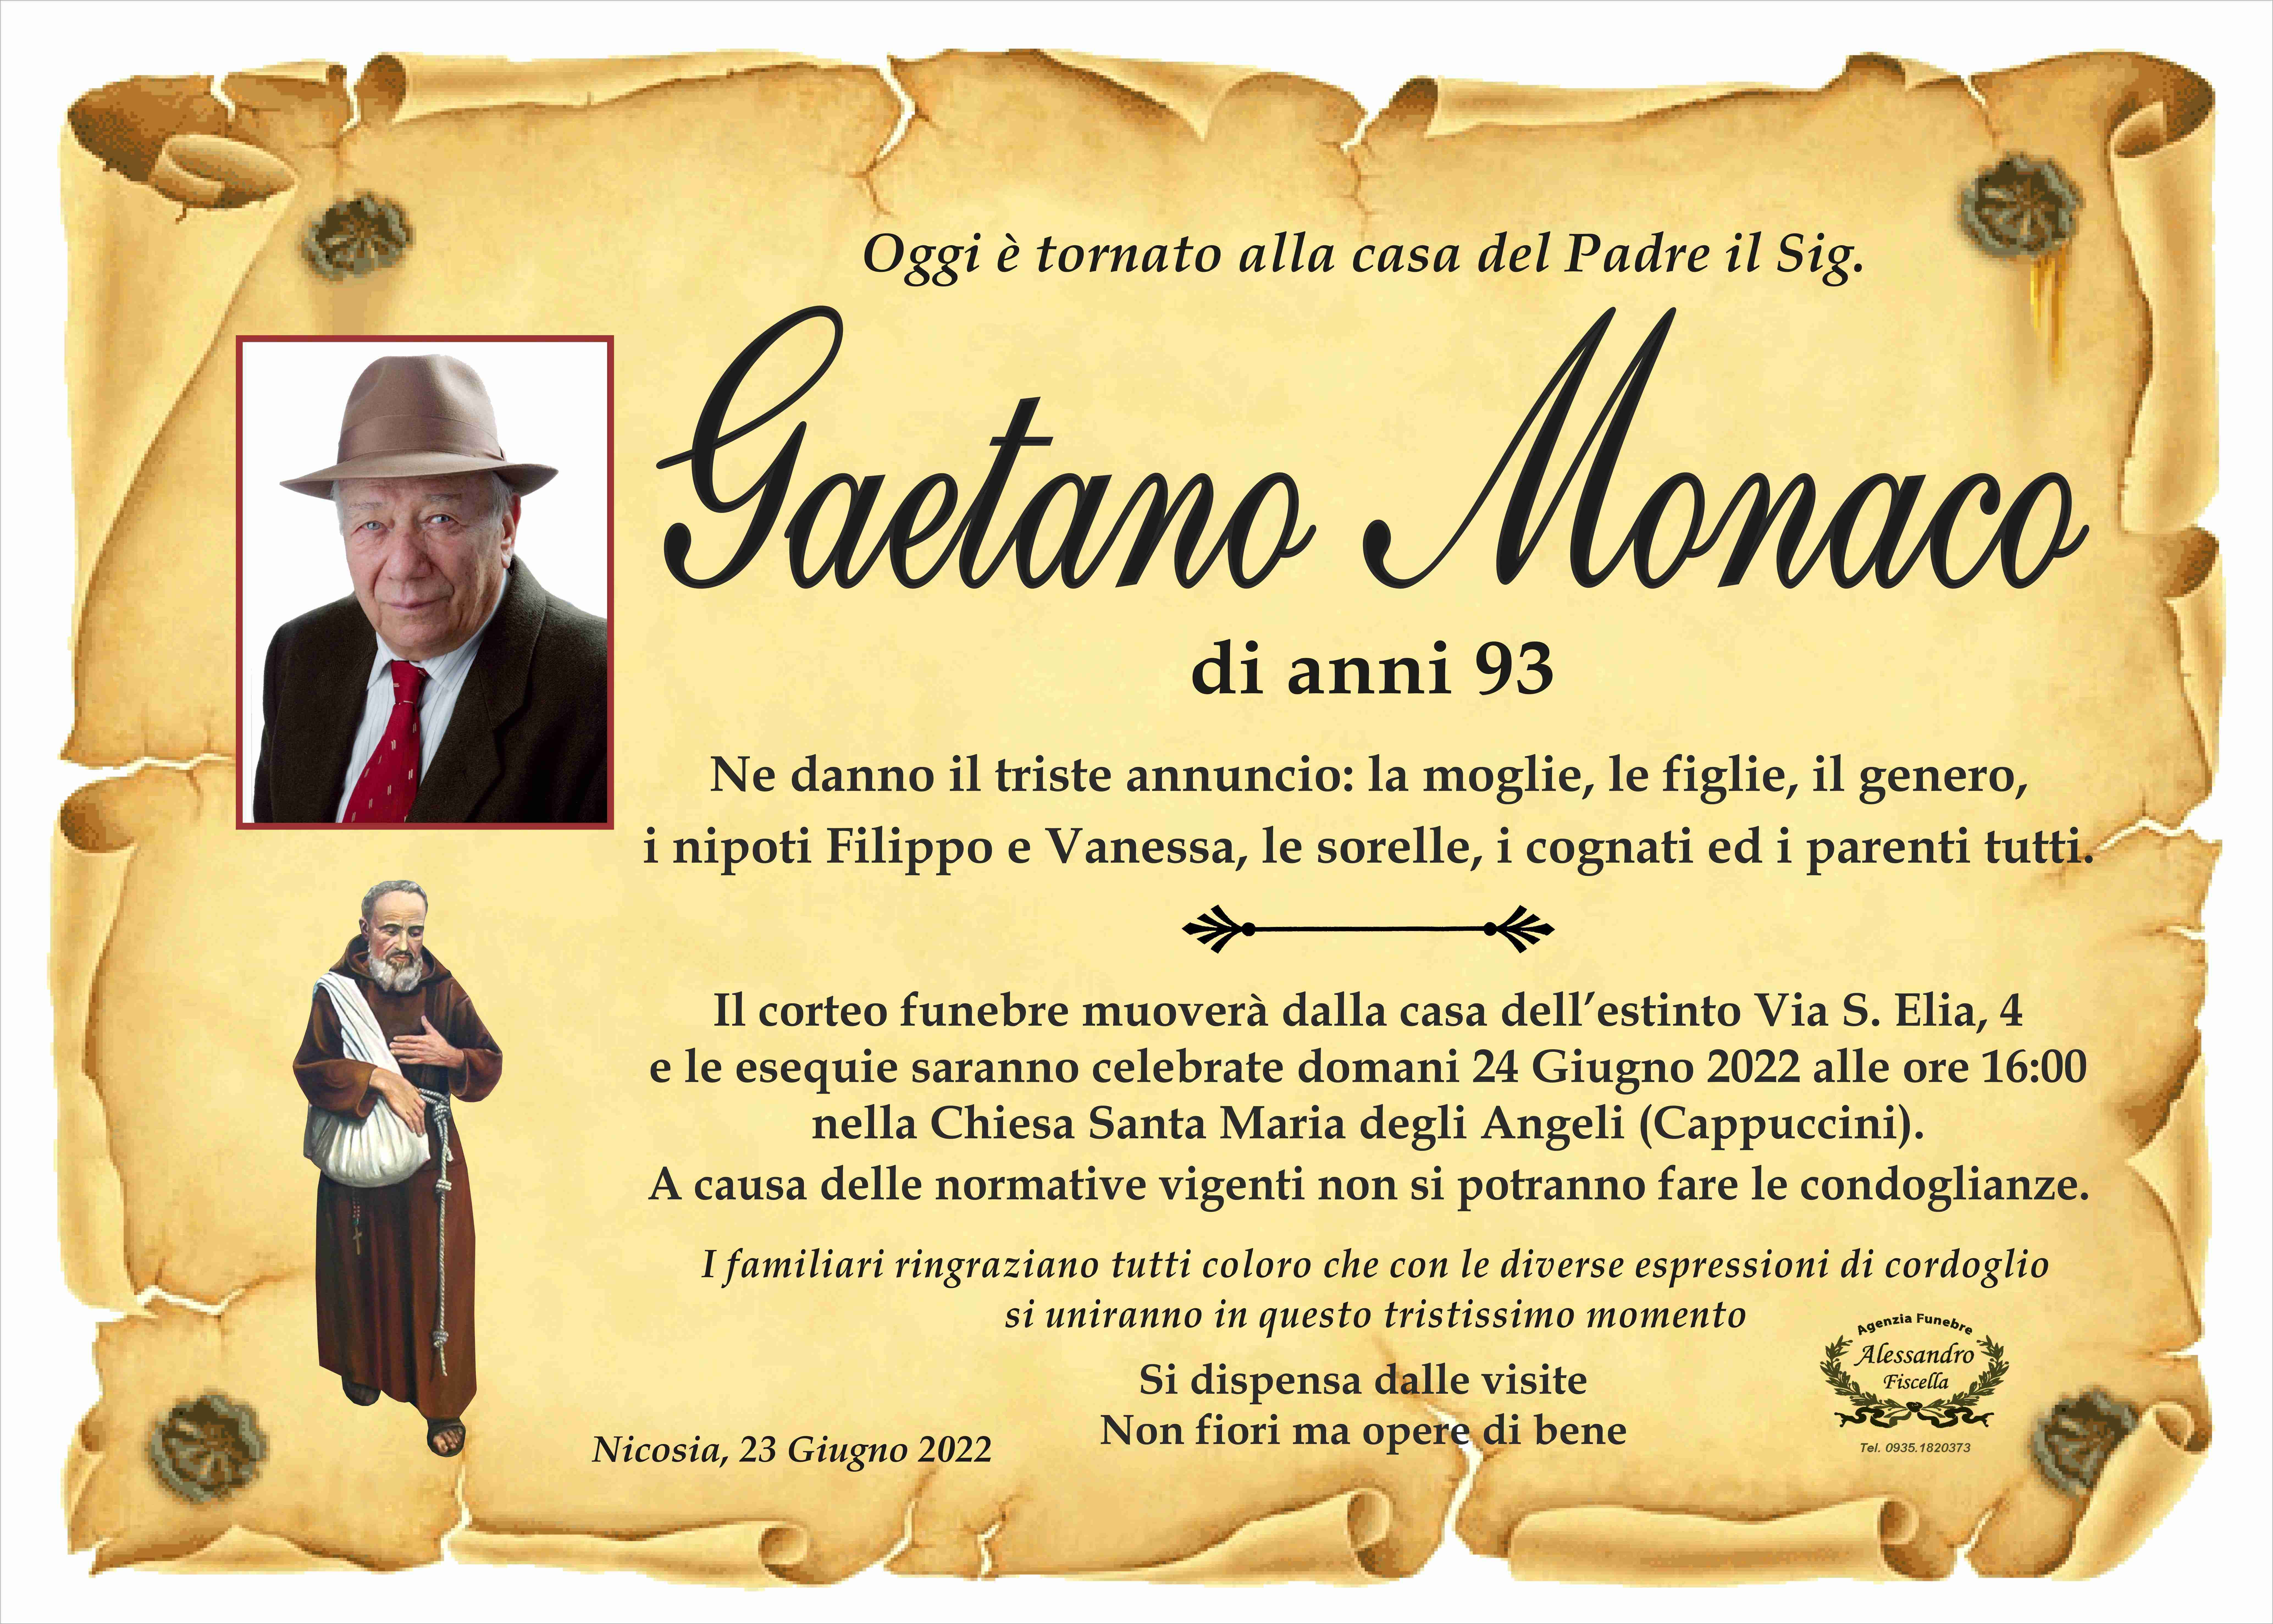 Gaetano Monaco